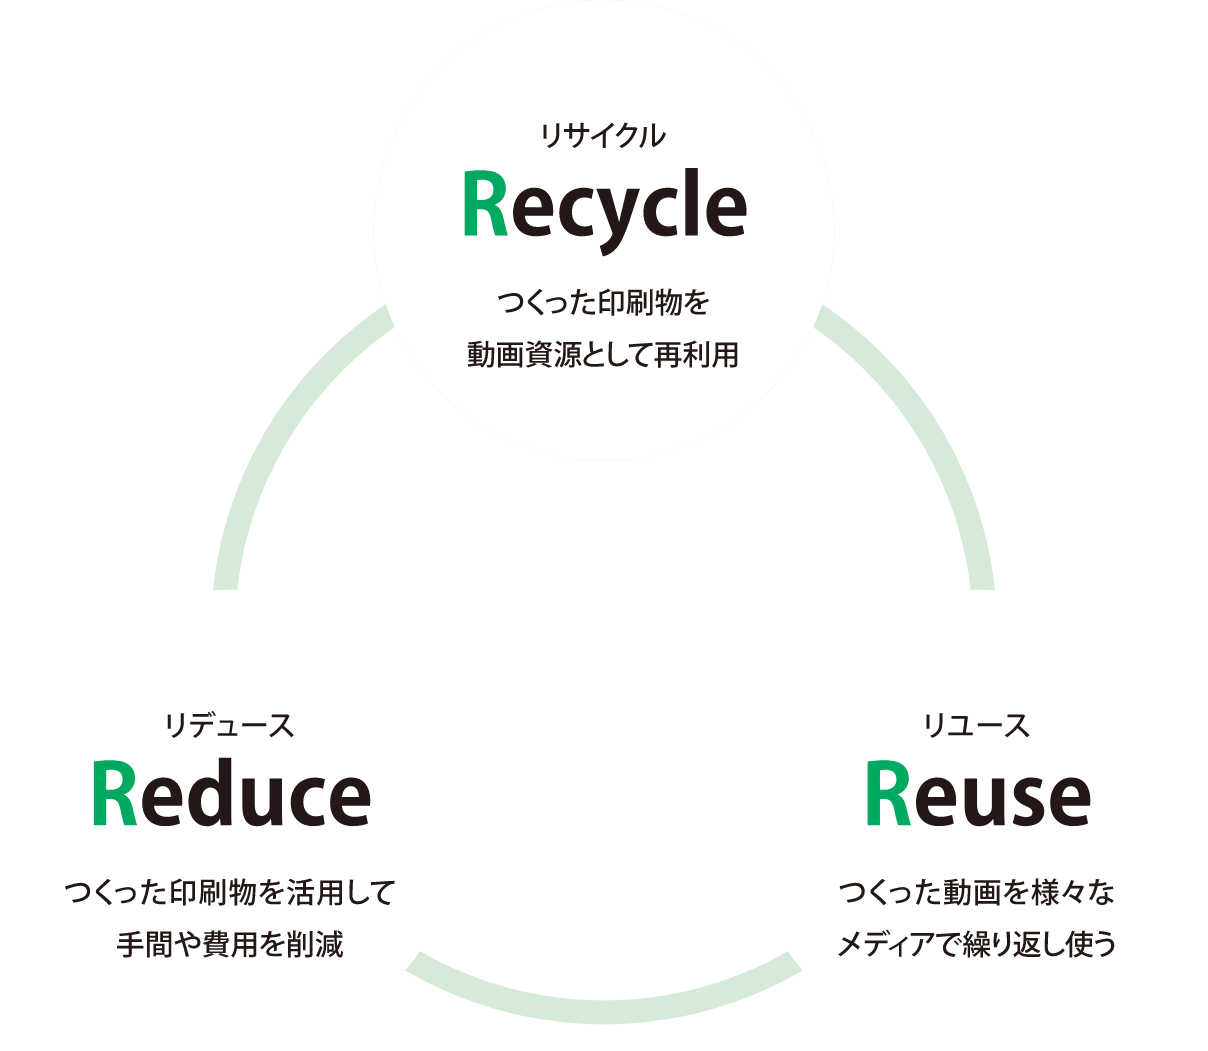 動画化で実現する3R【Recycle（リサイクル）】つくった印刷物を動画資源として再利用【Reduce（リデュース）】つくった印刷物を活用して手間や費用を削減【Reuse（リユース）】つくった動画を様々なメディアで繰り返し使う